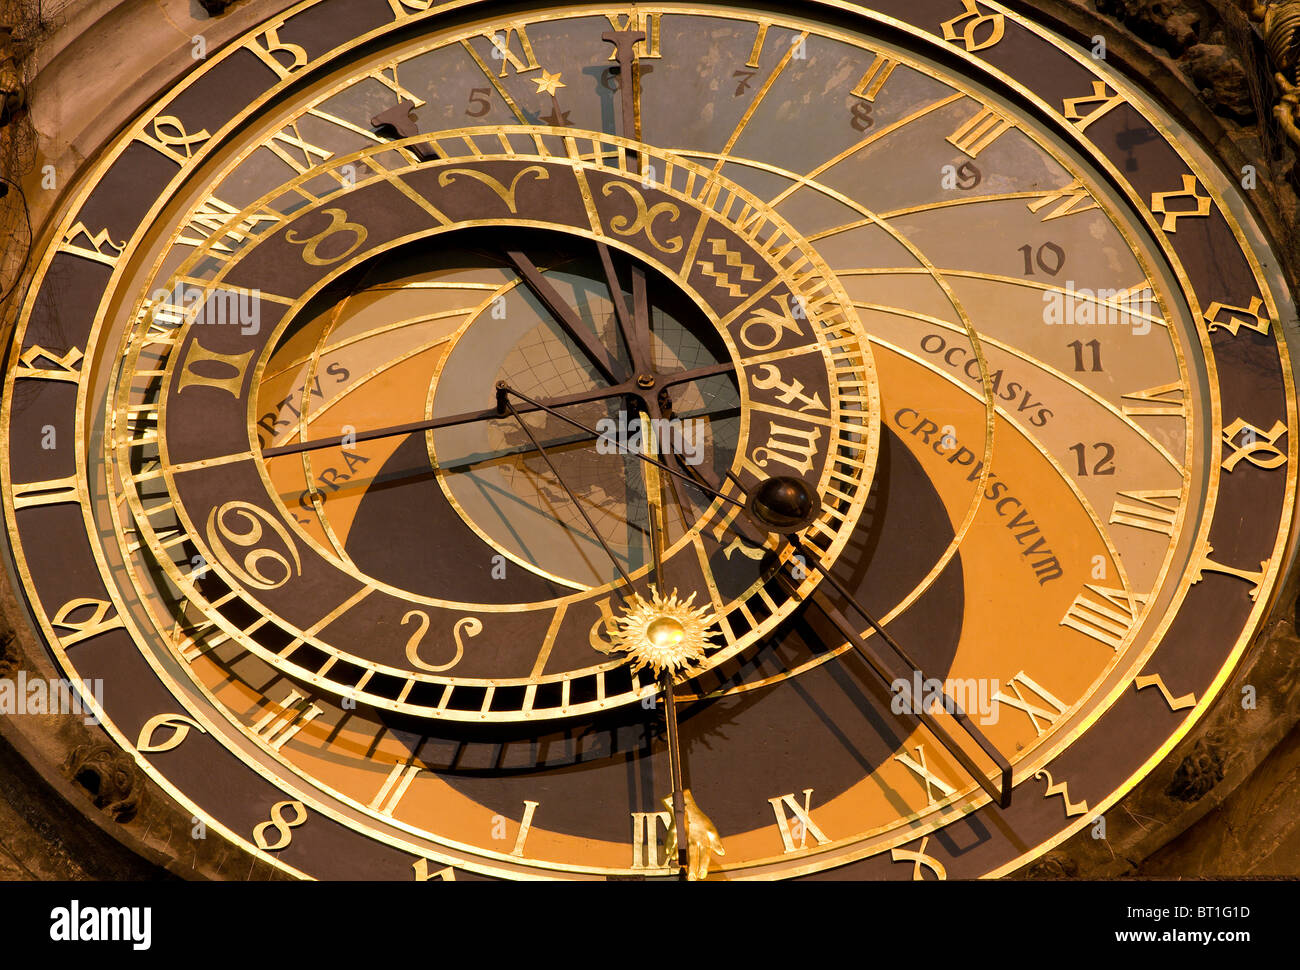 Praga - dettaglio della torre-orologio Foto Stock